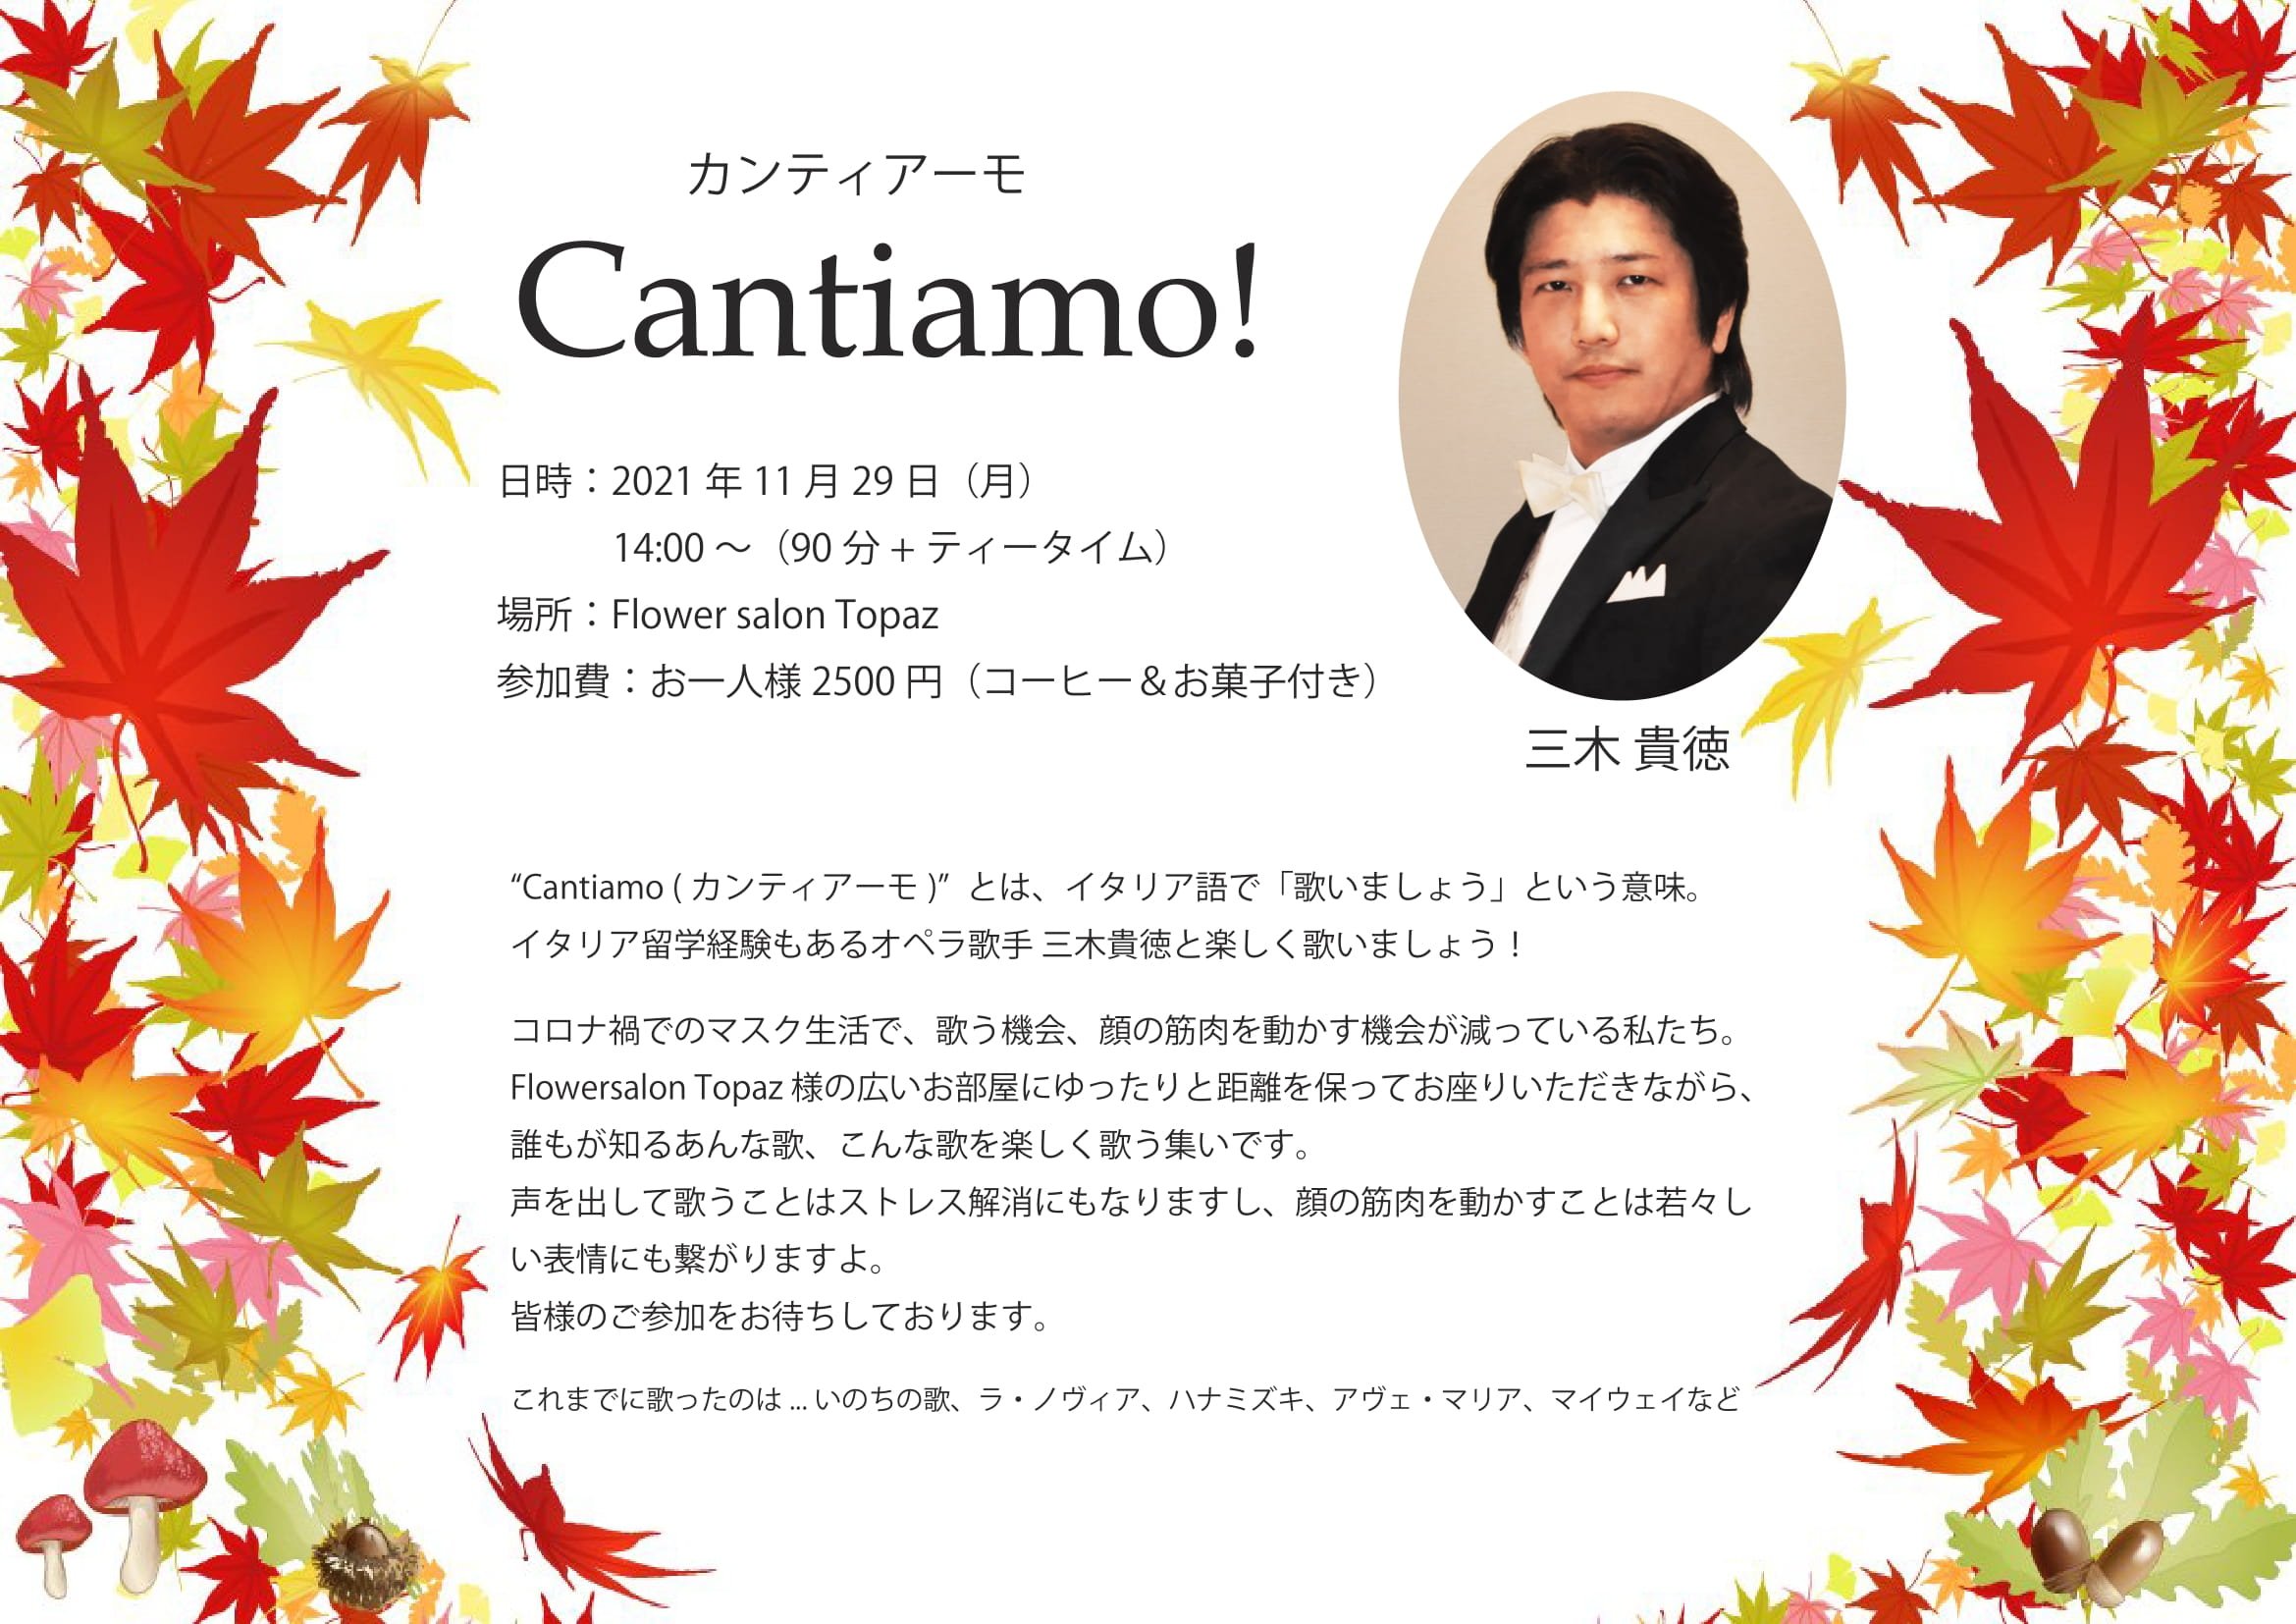 Cantiamo!(カンティアーモ)歌いましょう
11/29(月)14:00〜
広島市中区(当音楽教室から徒歩7分)
Flower salon Topaz様にて開催